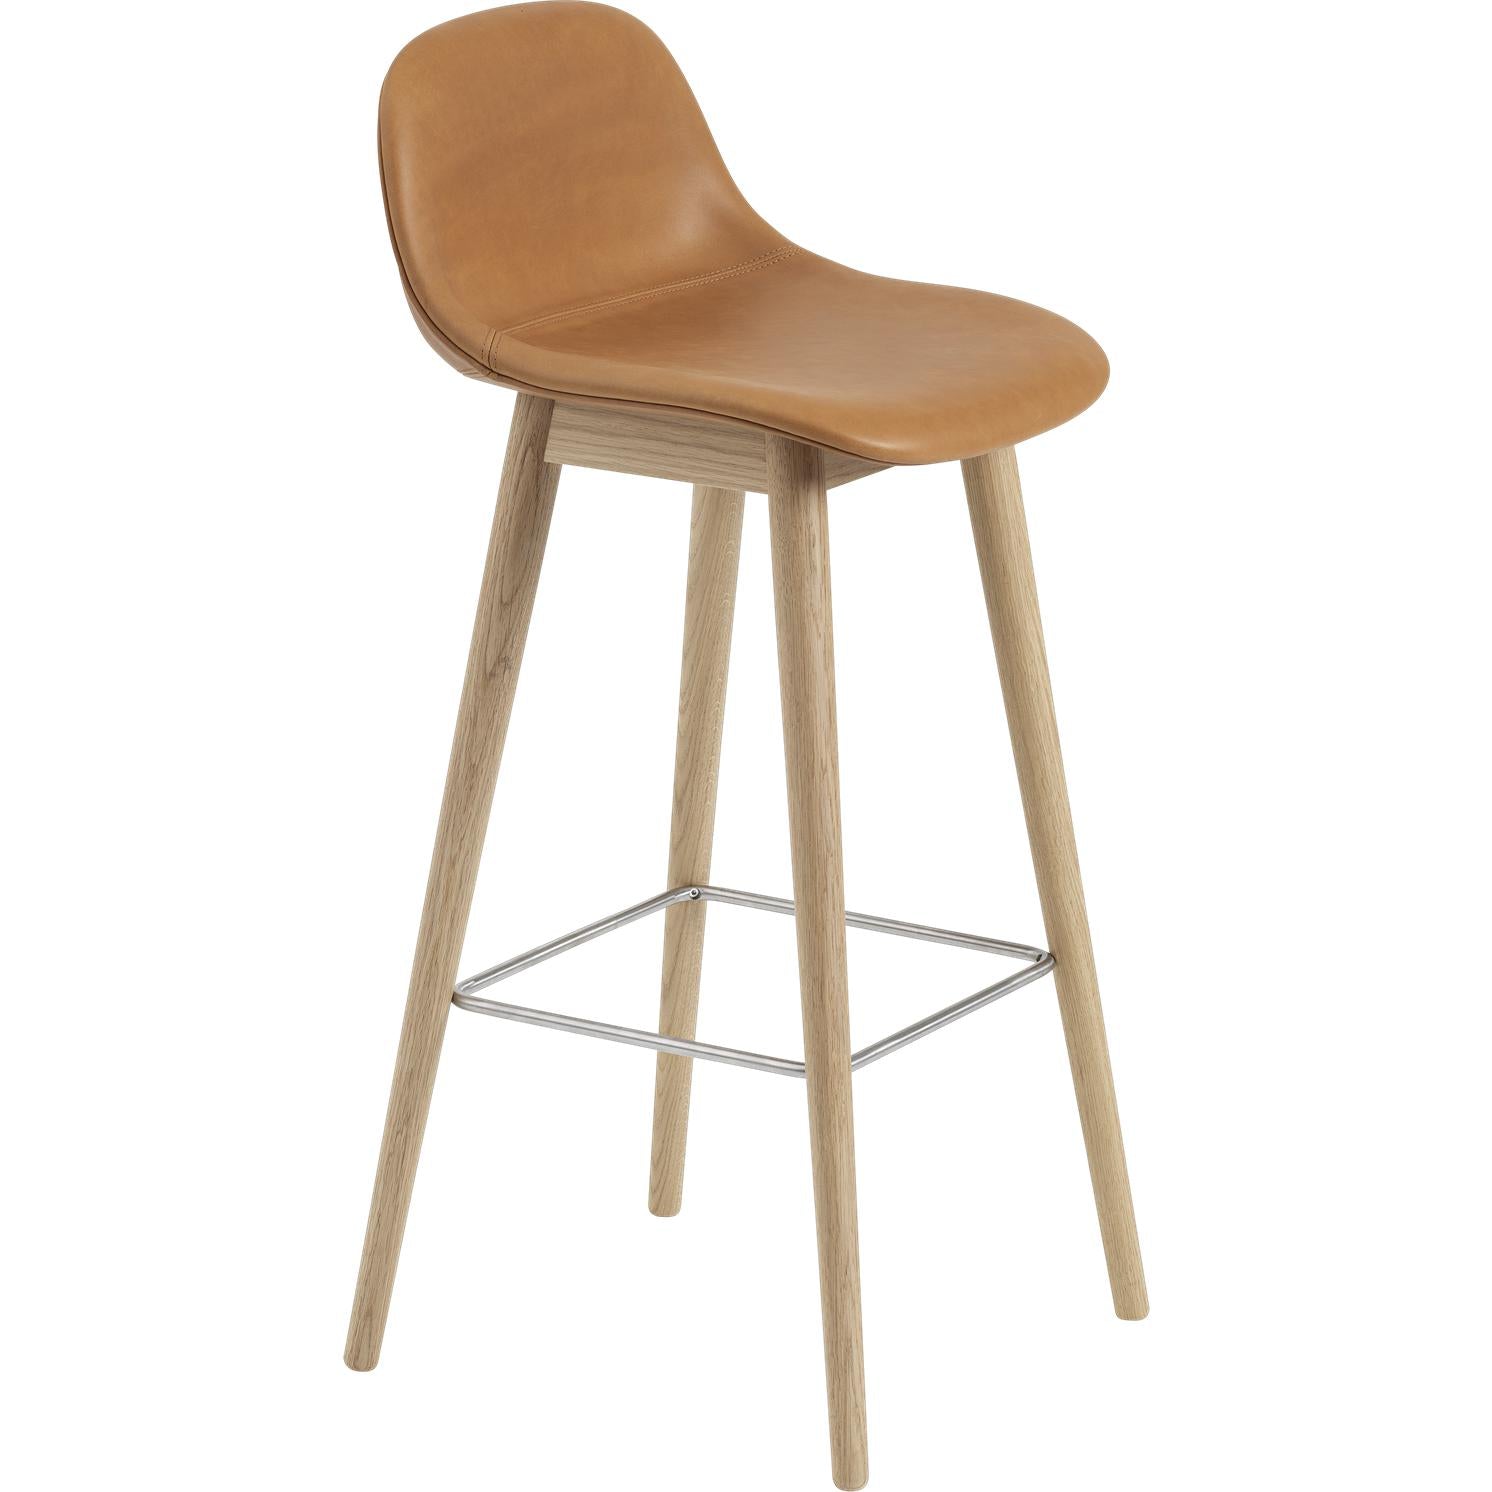 Muuto Chaise de bar en fibre avec des jambes en bois en bois, siège en fibre / cuir, cuir cognac marron